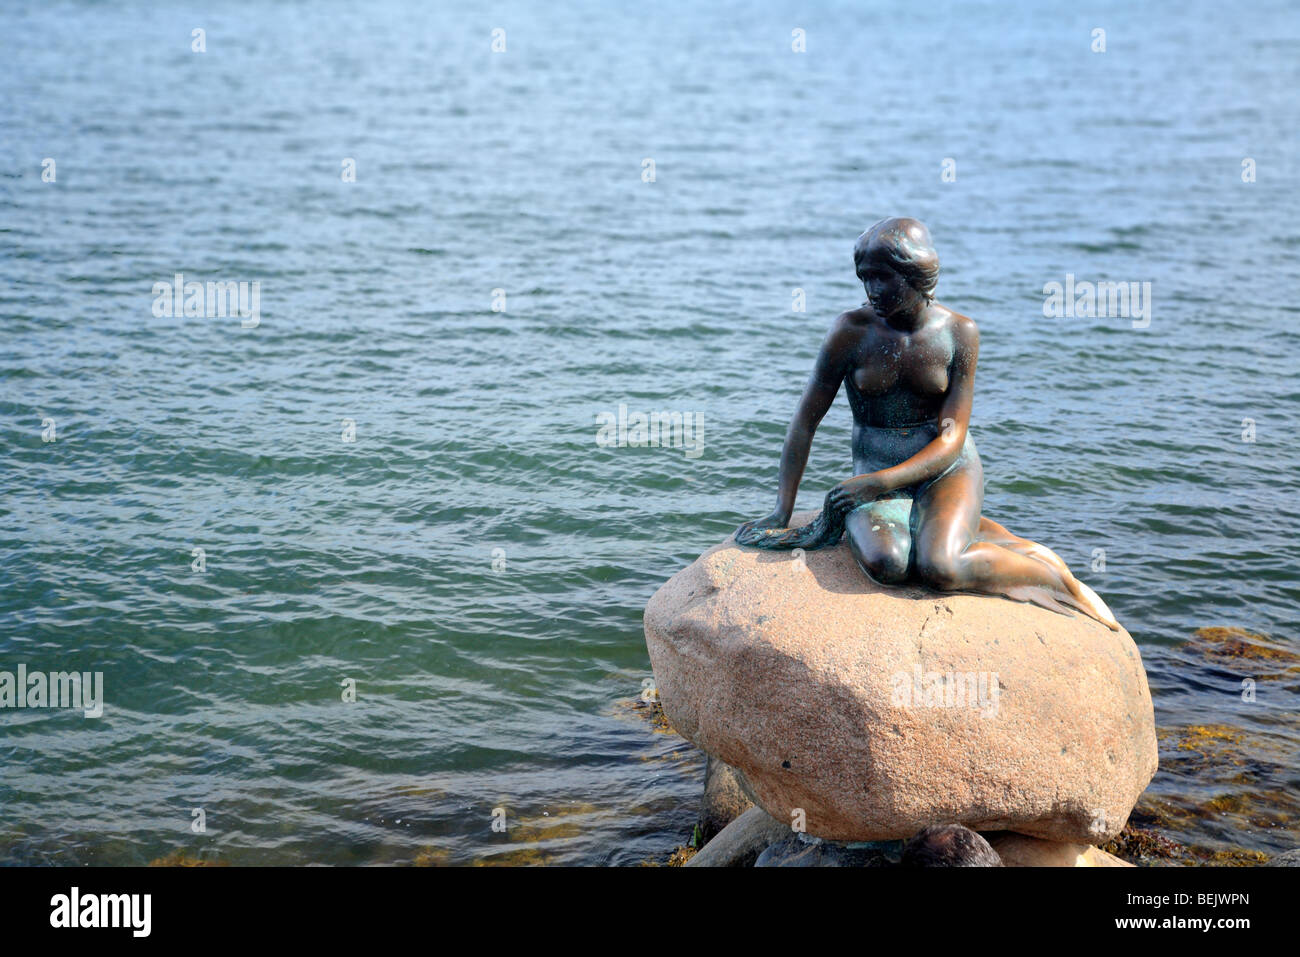 La statue de la Petite Sirène par le sculpteur Edvard Eriksen à Langelinie quay, Copenhague, Danemark Banque D'Images